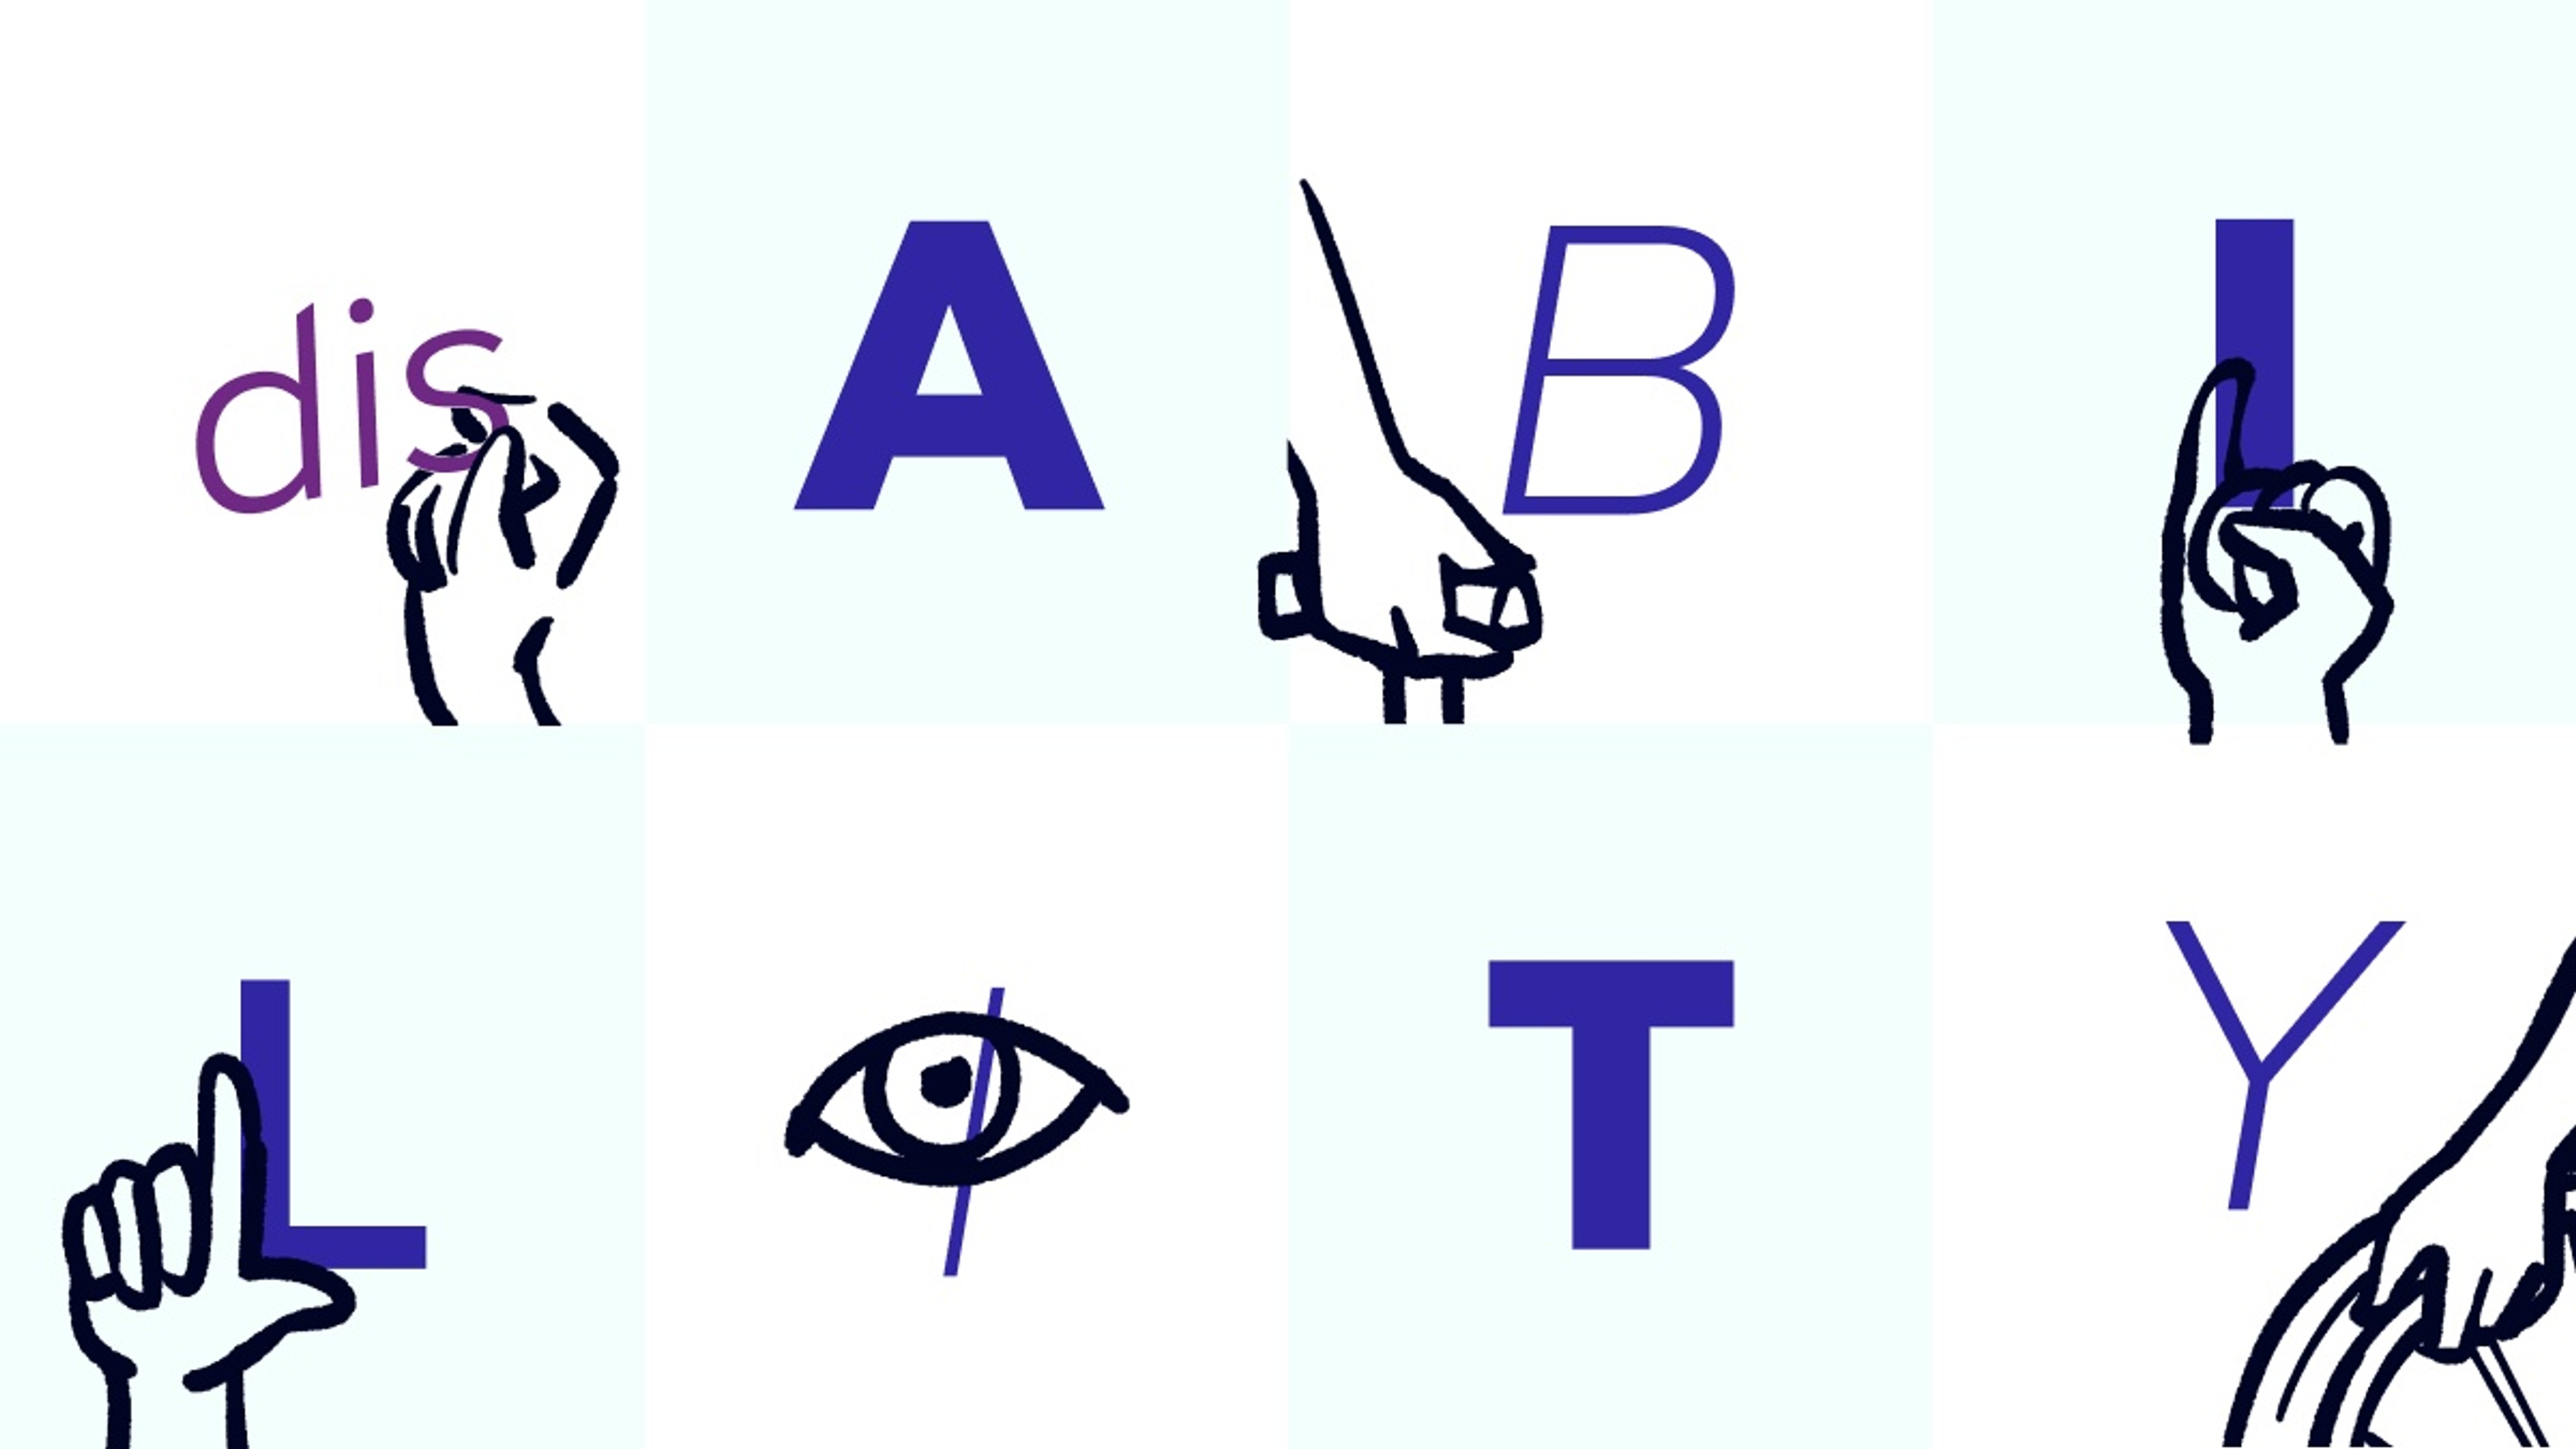 Das Wort "Behinderung" auf Kacheln verteilt, durch Handzeichen und Illustrationen visualisiert, die die Buchstaben umgeben.